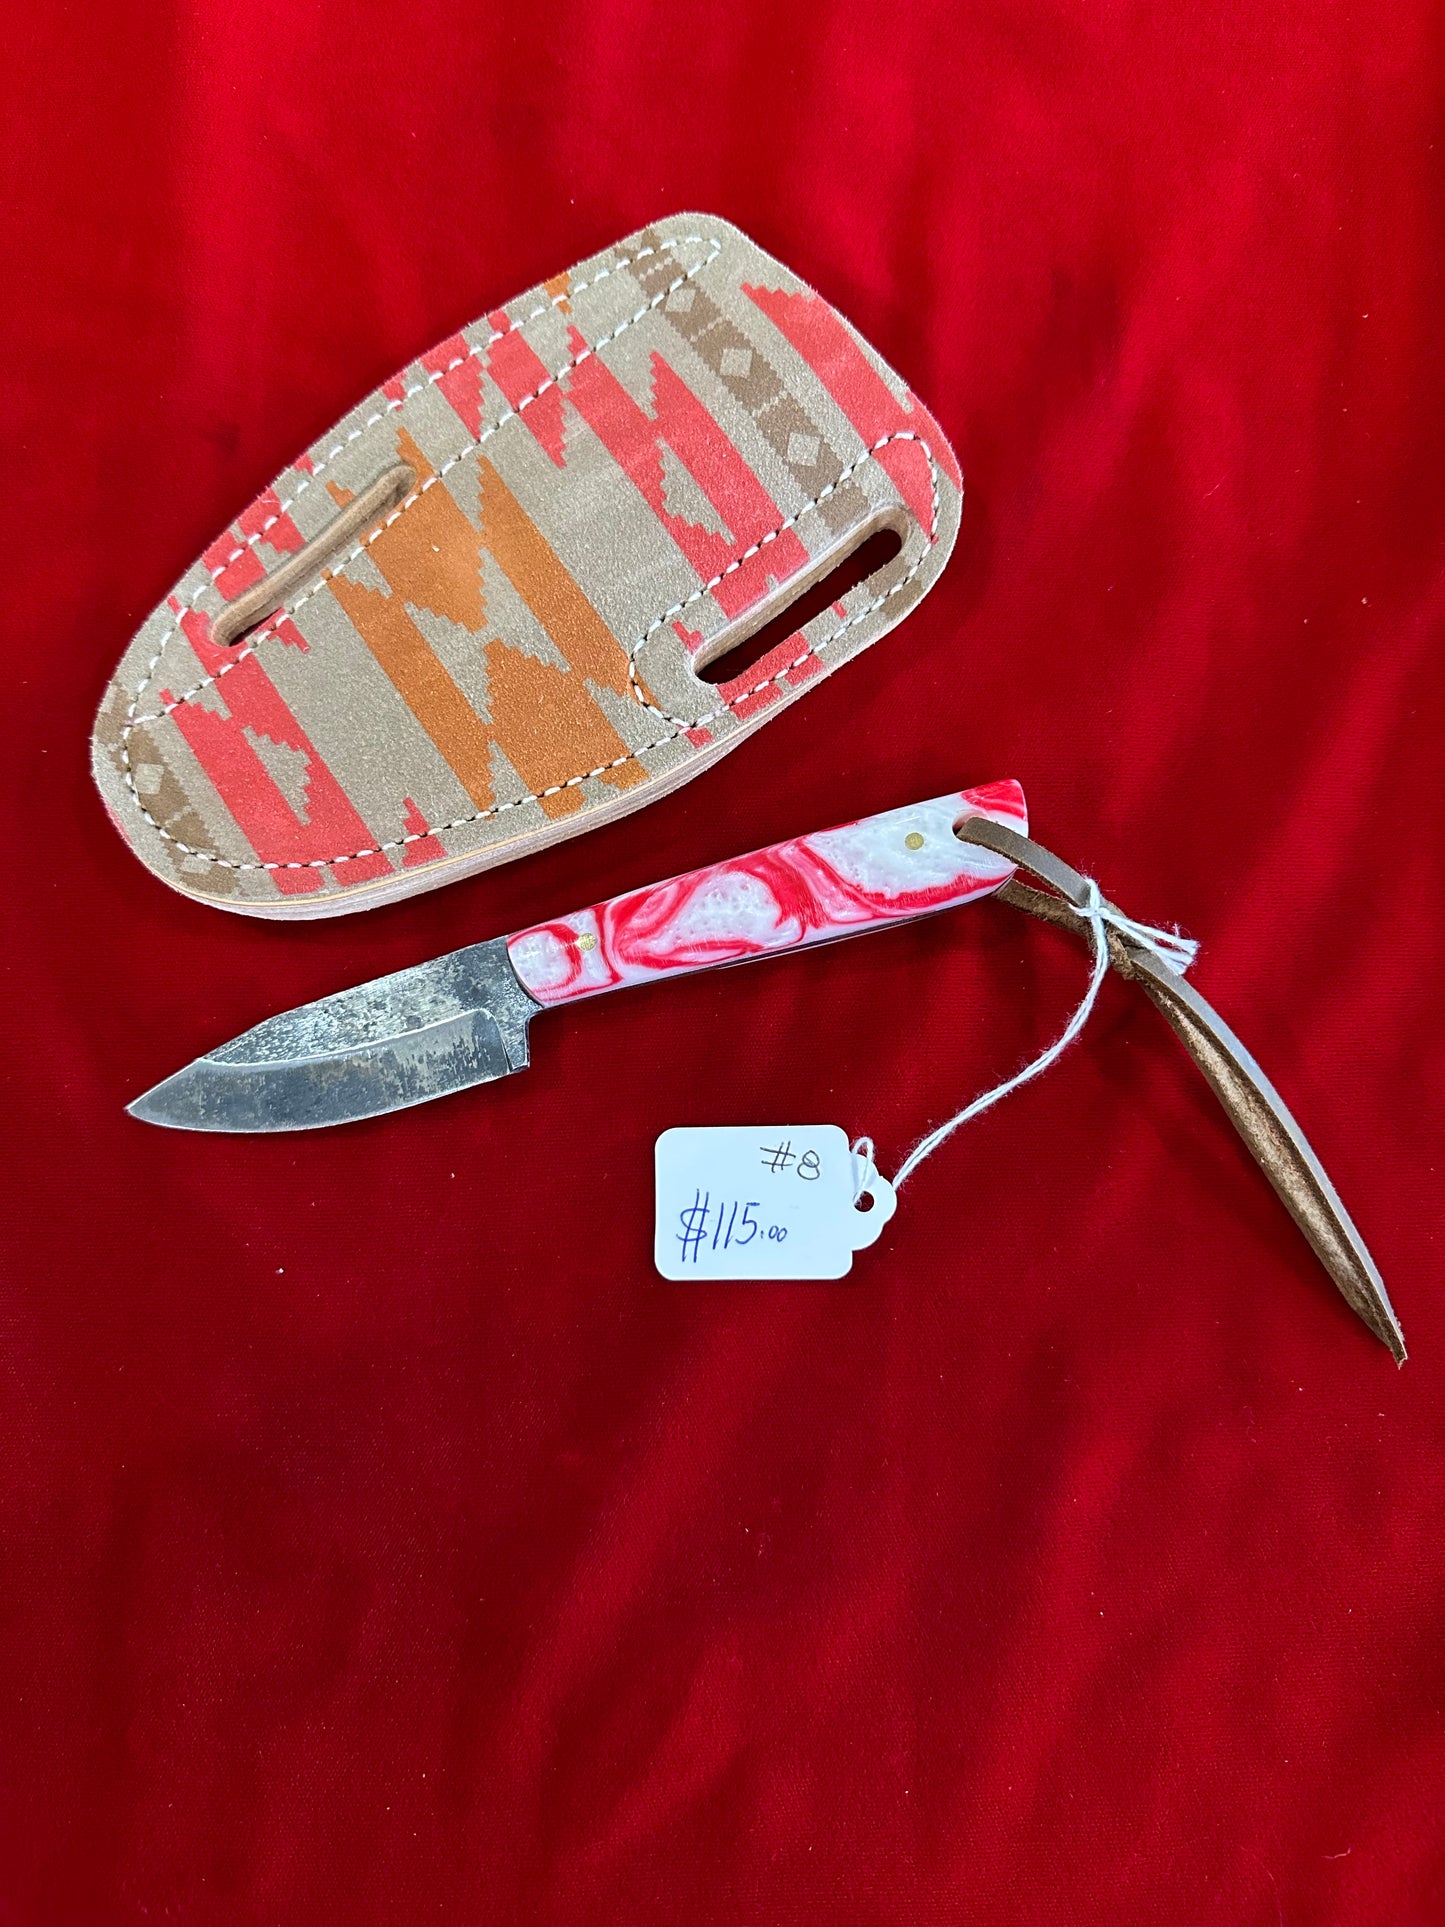 Handmade Knifes and Sheaths